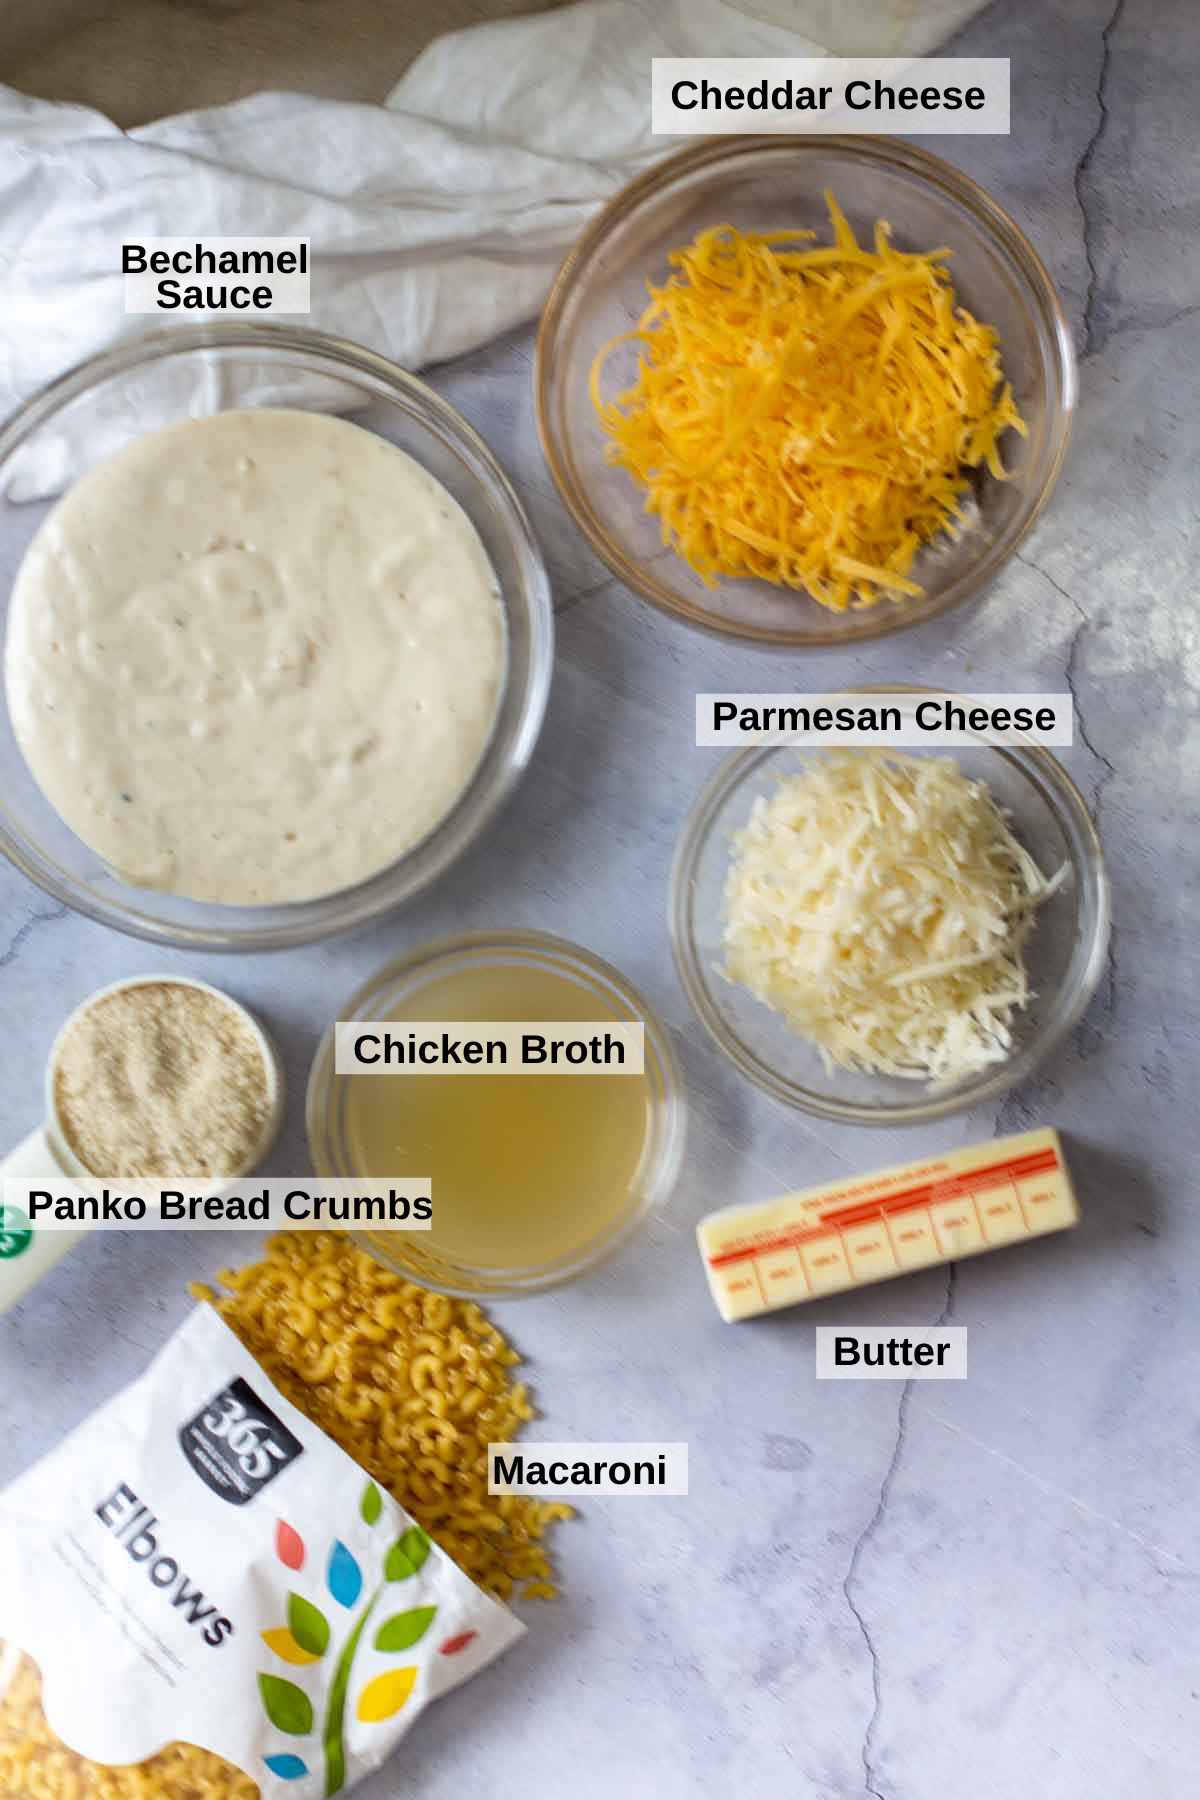 Ingredients to make macaroni Bechamel.